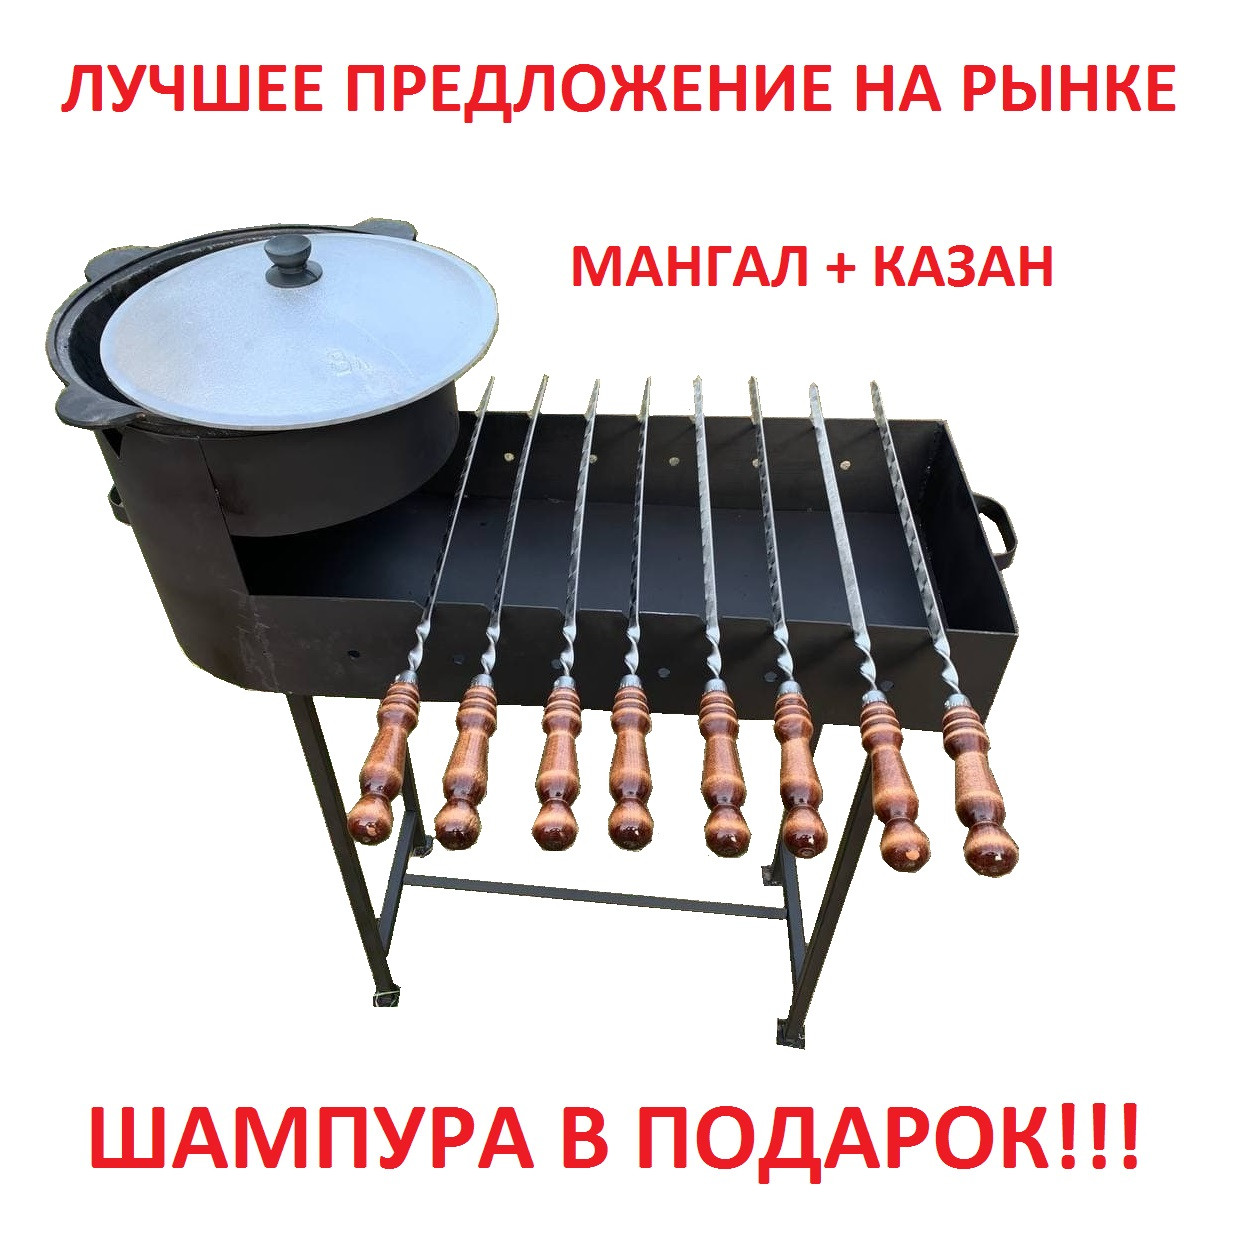 Набор Мангал с печью для казана и узбекский казан на 8 литров, фото 1